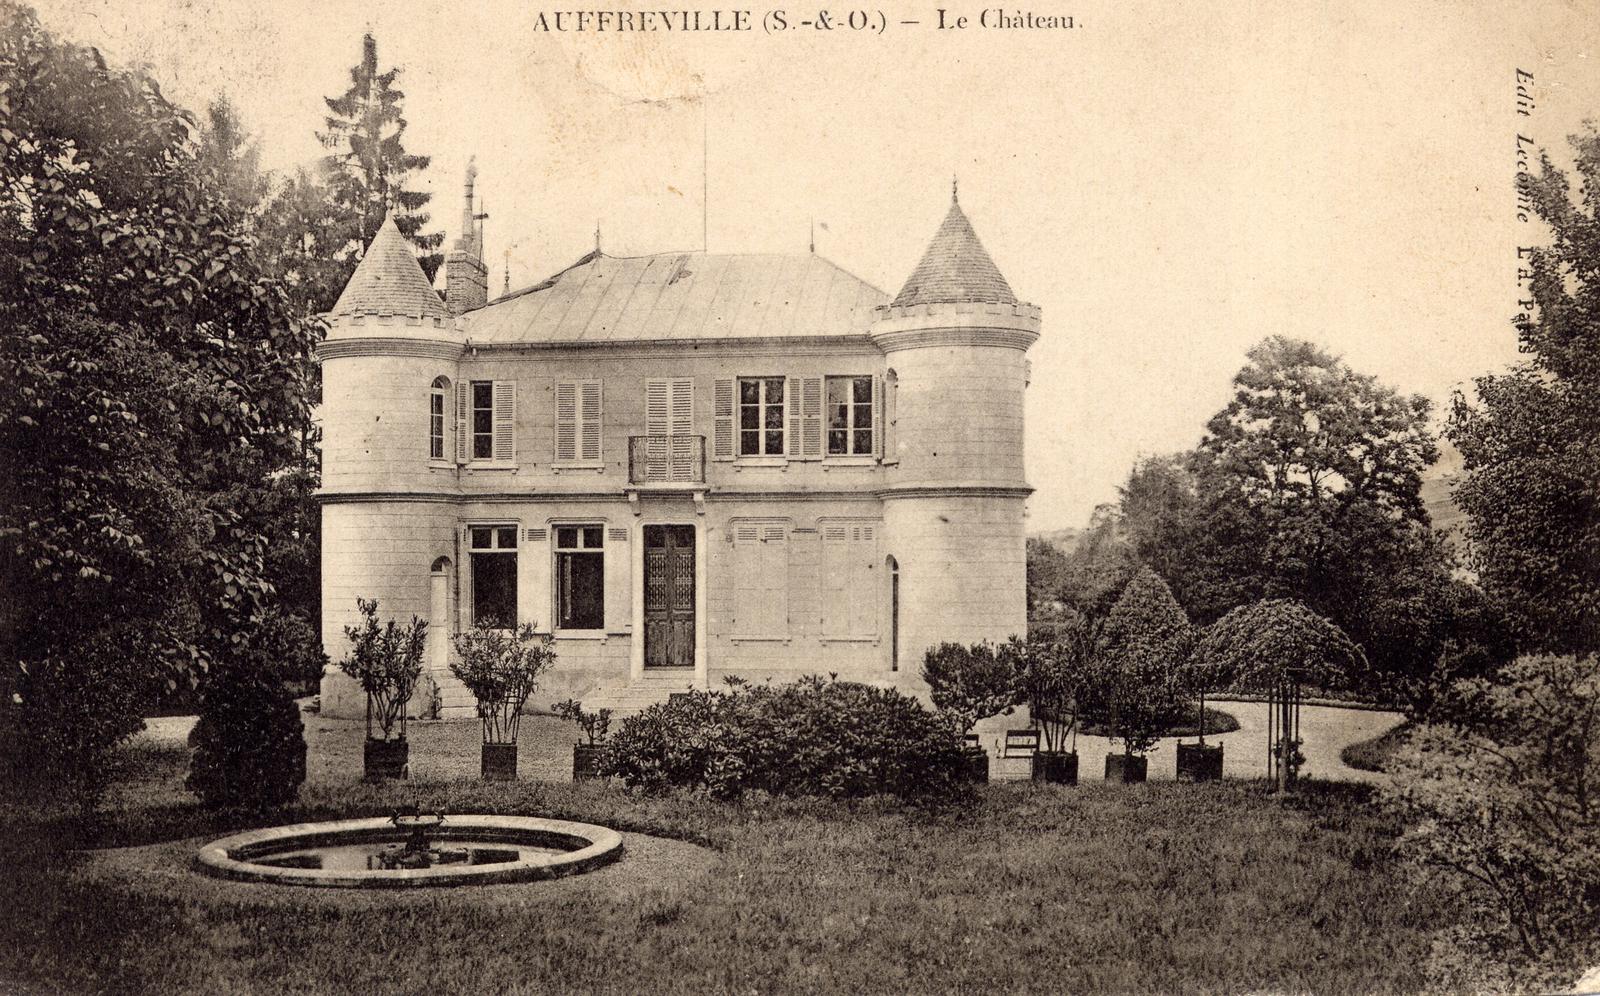 Chateau auffreville